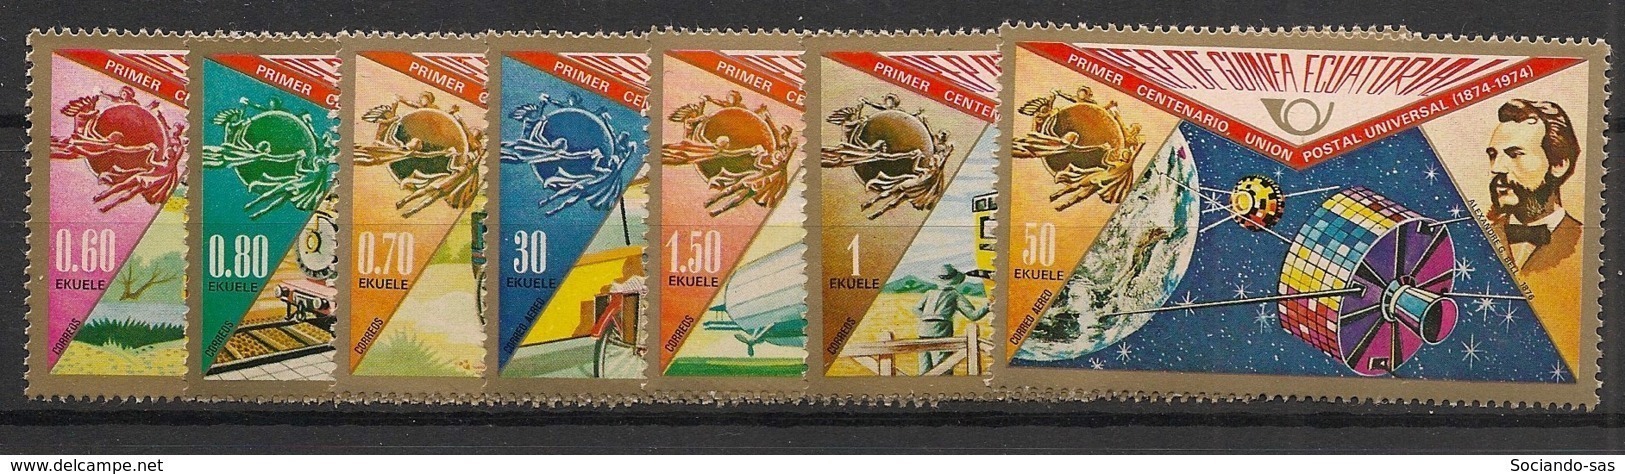 Guinée  équatoriale - 1974 - N°Mi. 382 à 388 - UPU - Neuf Luxe ** / MNH / Postfrisch - Guinée Equatoriale